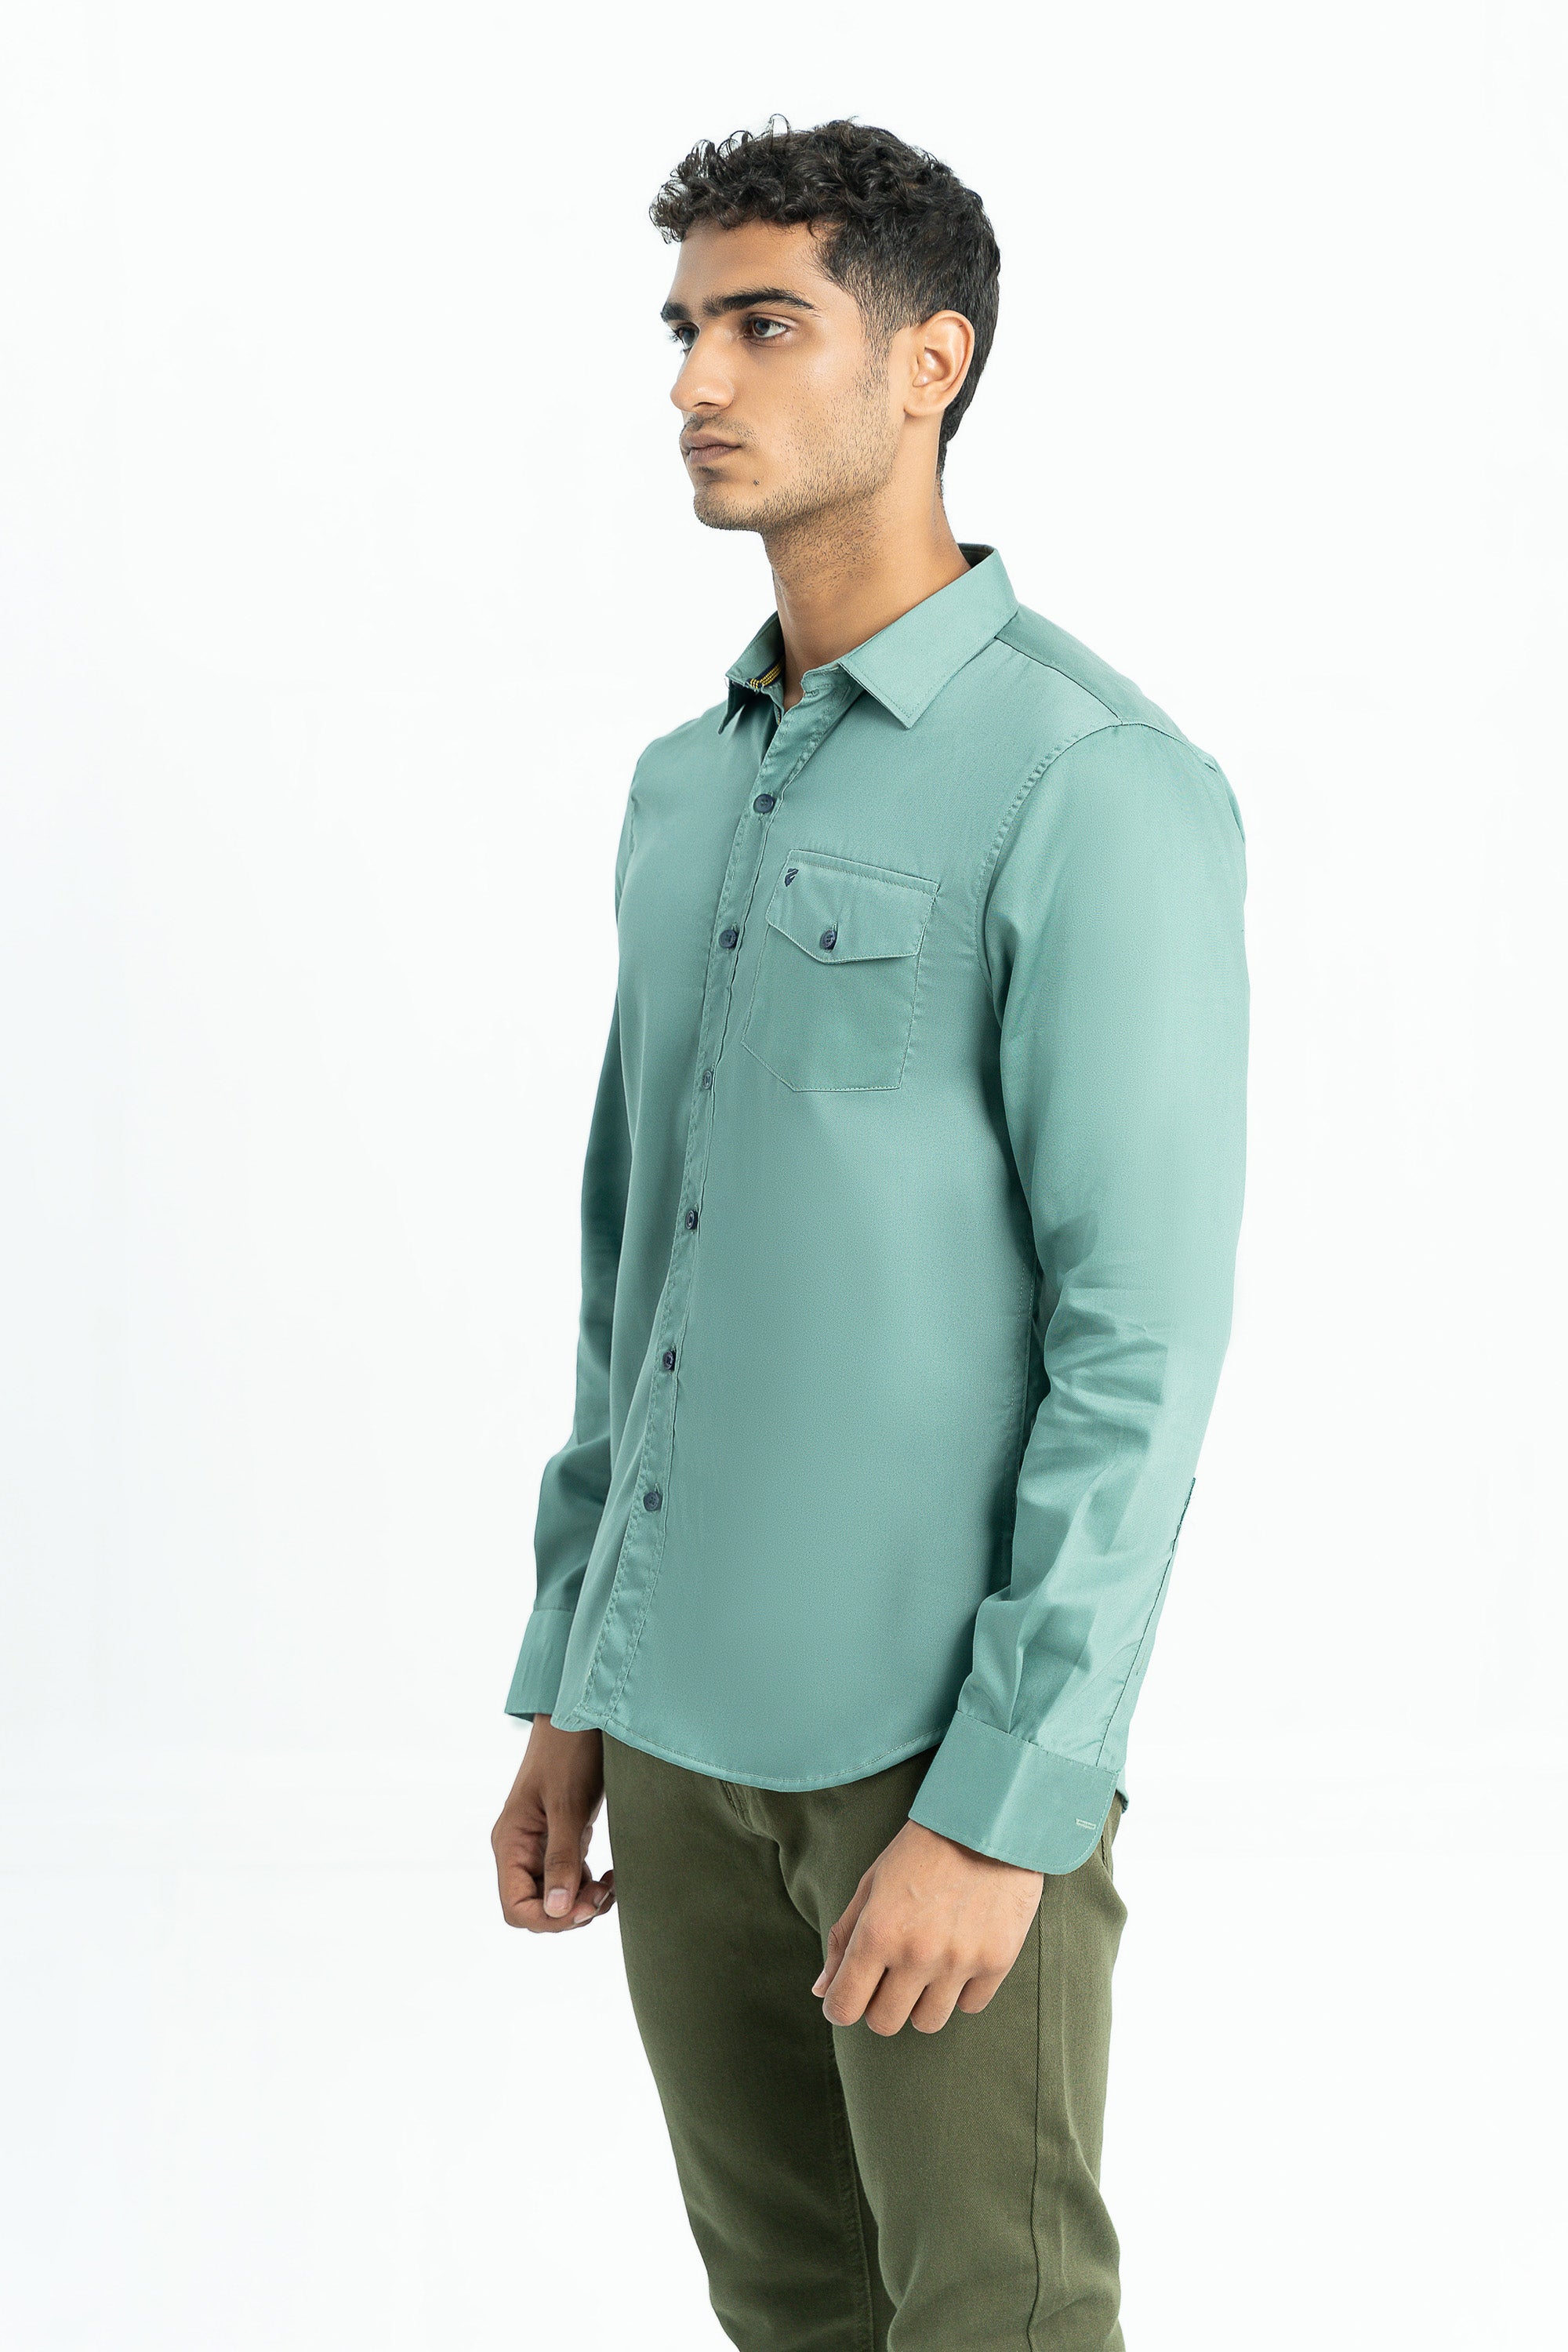 Light green casual shirt